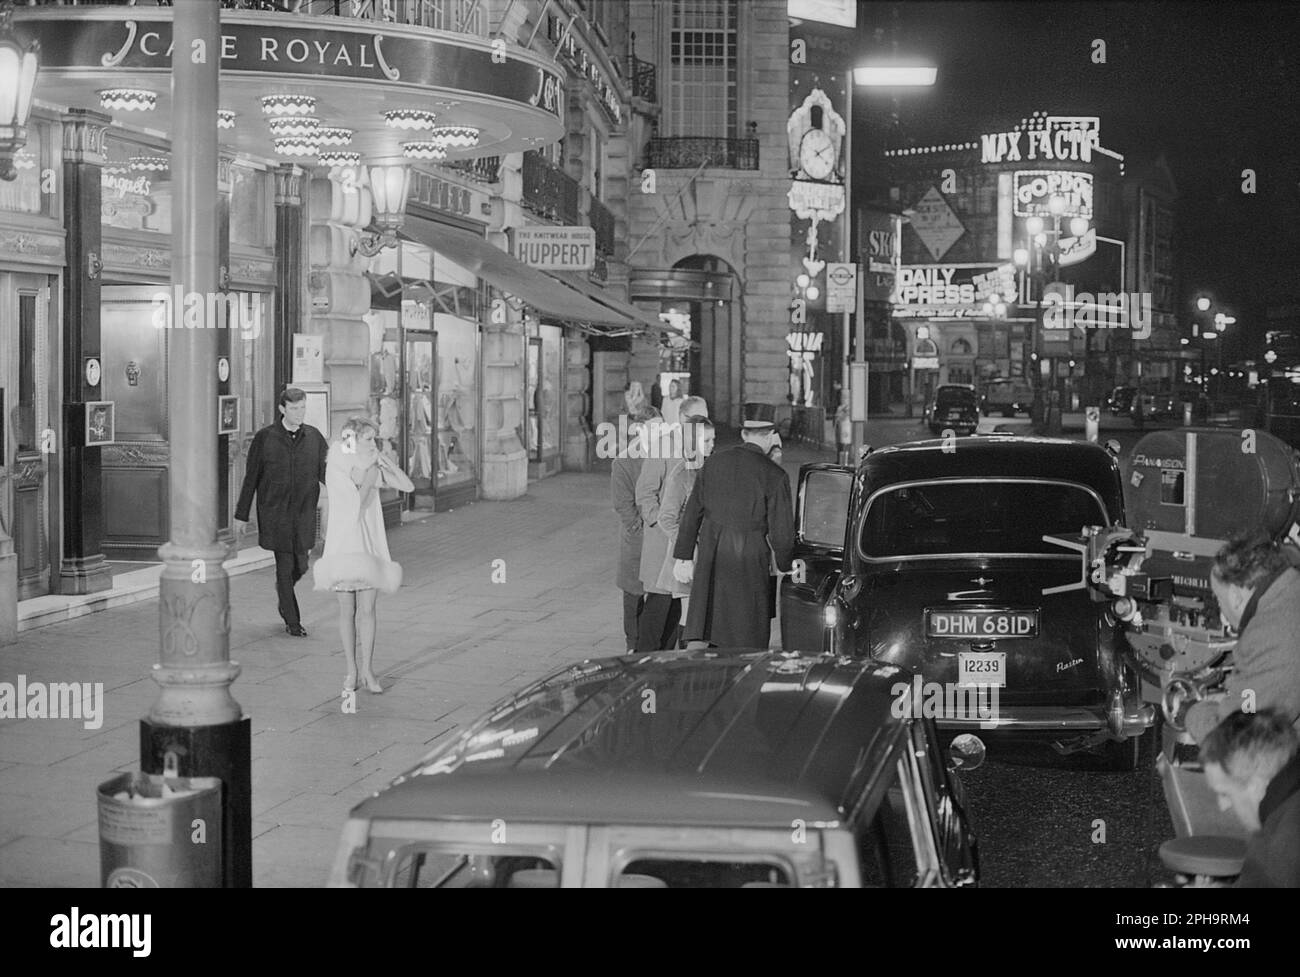 Londra. circa 1967. Una fotografia di mia Farrow e Laurence Harvey al di fuori del Café Royal, Regent Street a Piccadilly, Londra, scattata dietro le quinte durante le riprese del film di spia britannico neo-noir, ‘A Dandy in aspic’. Il film è stato diretto da Anthony Mann. Foto Stock